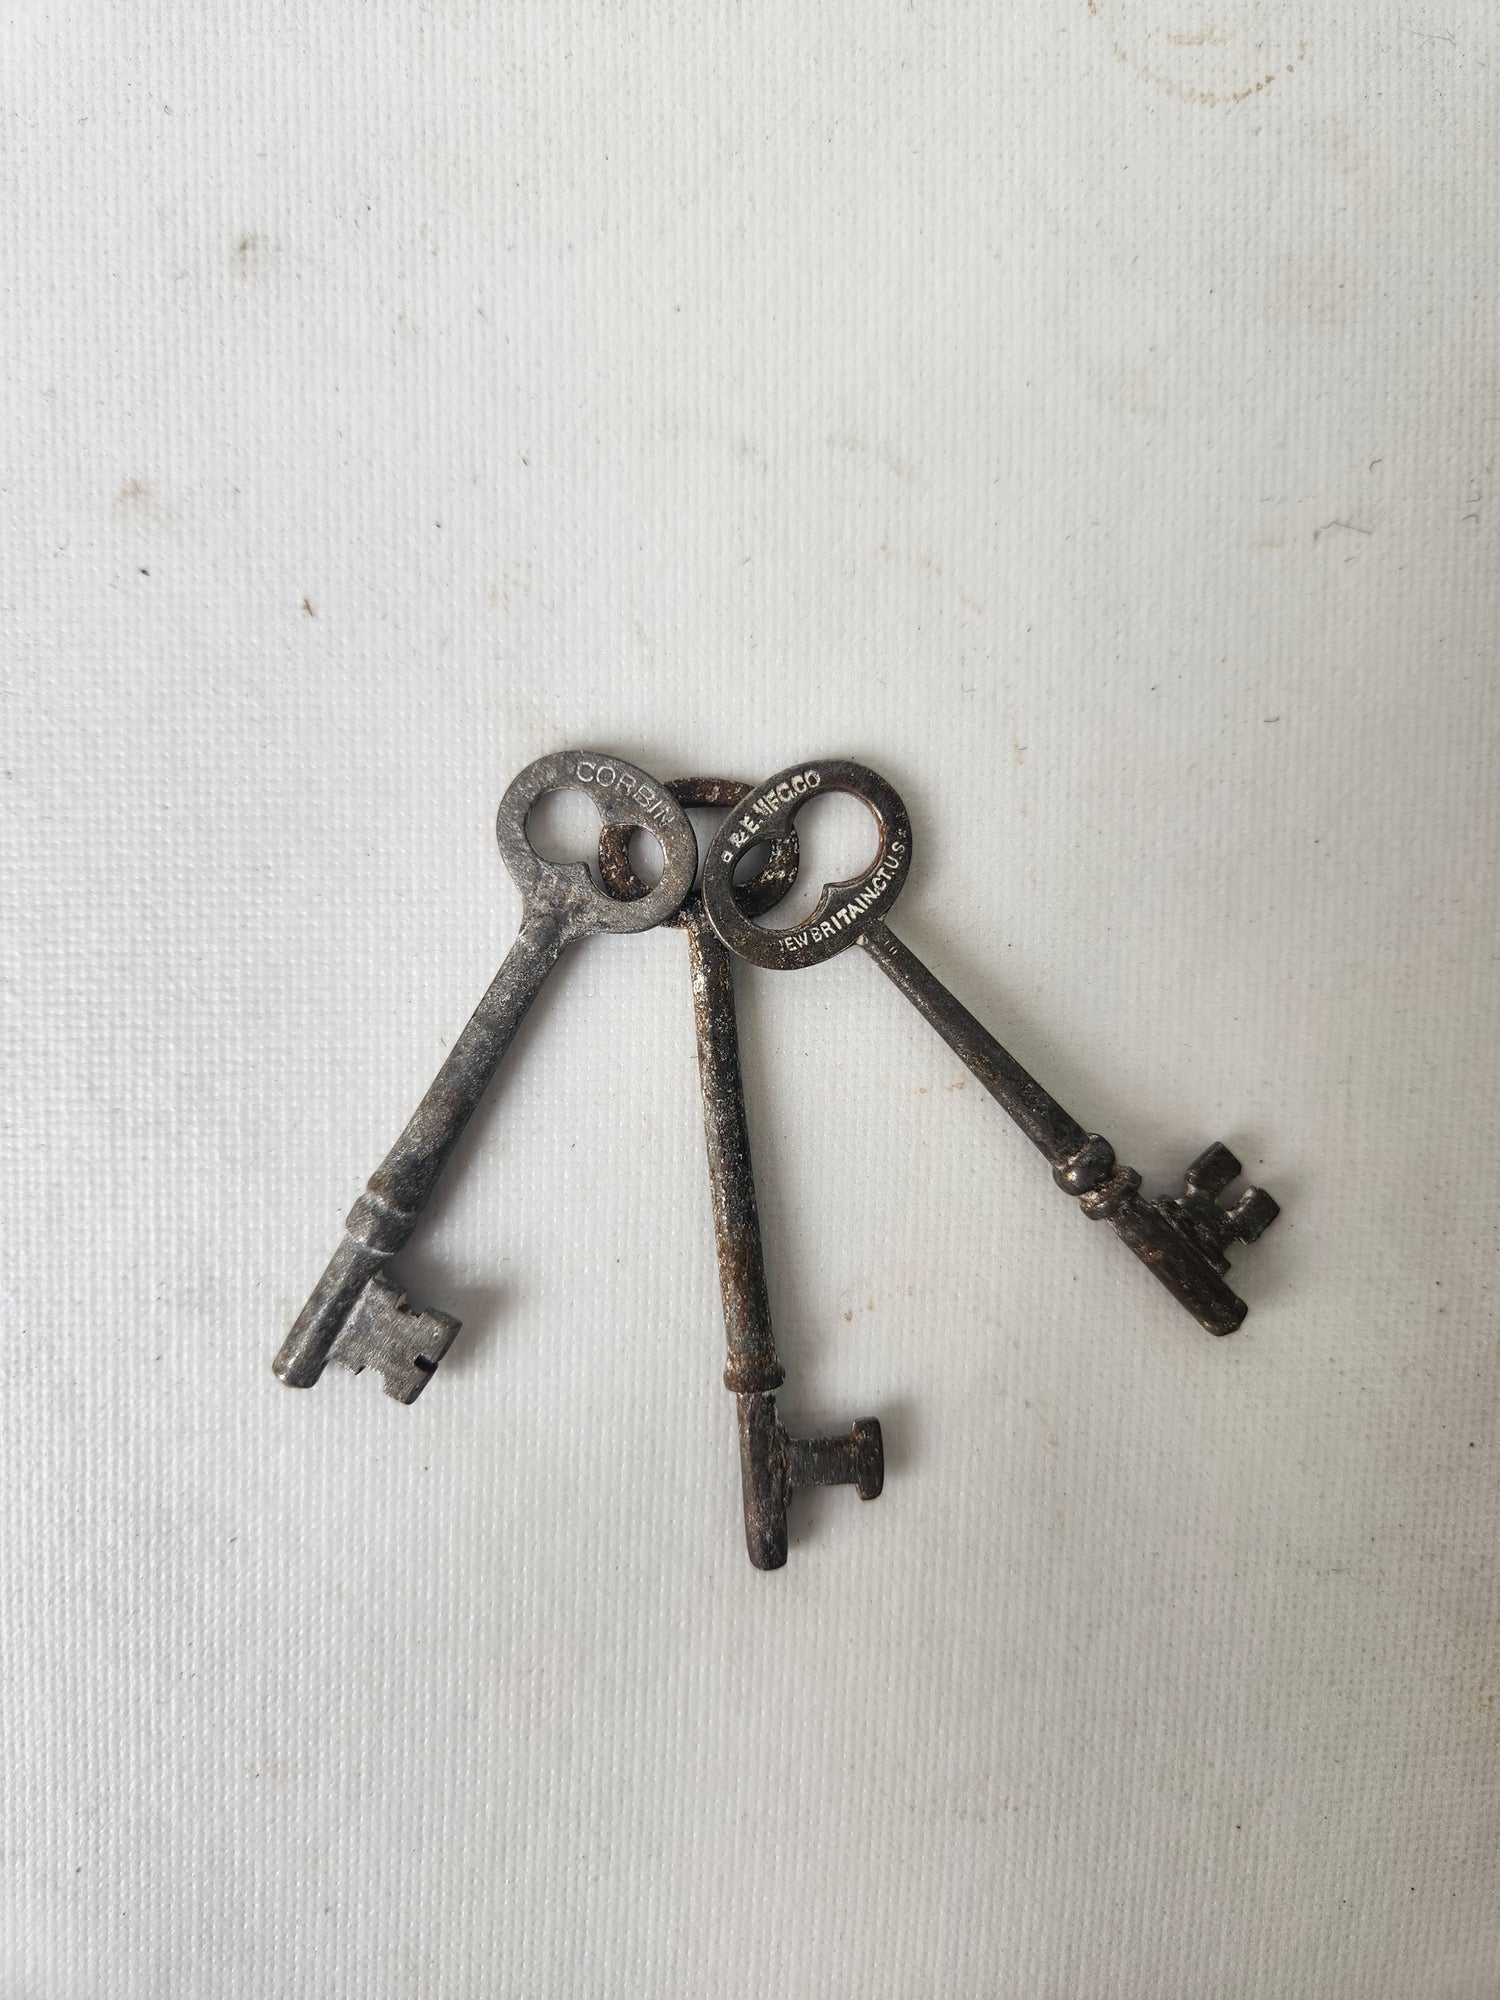 47 vintage keys, collection lot US skeleton antique optometry